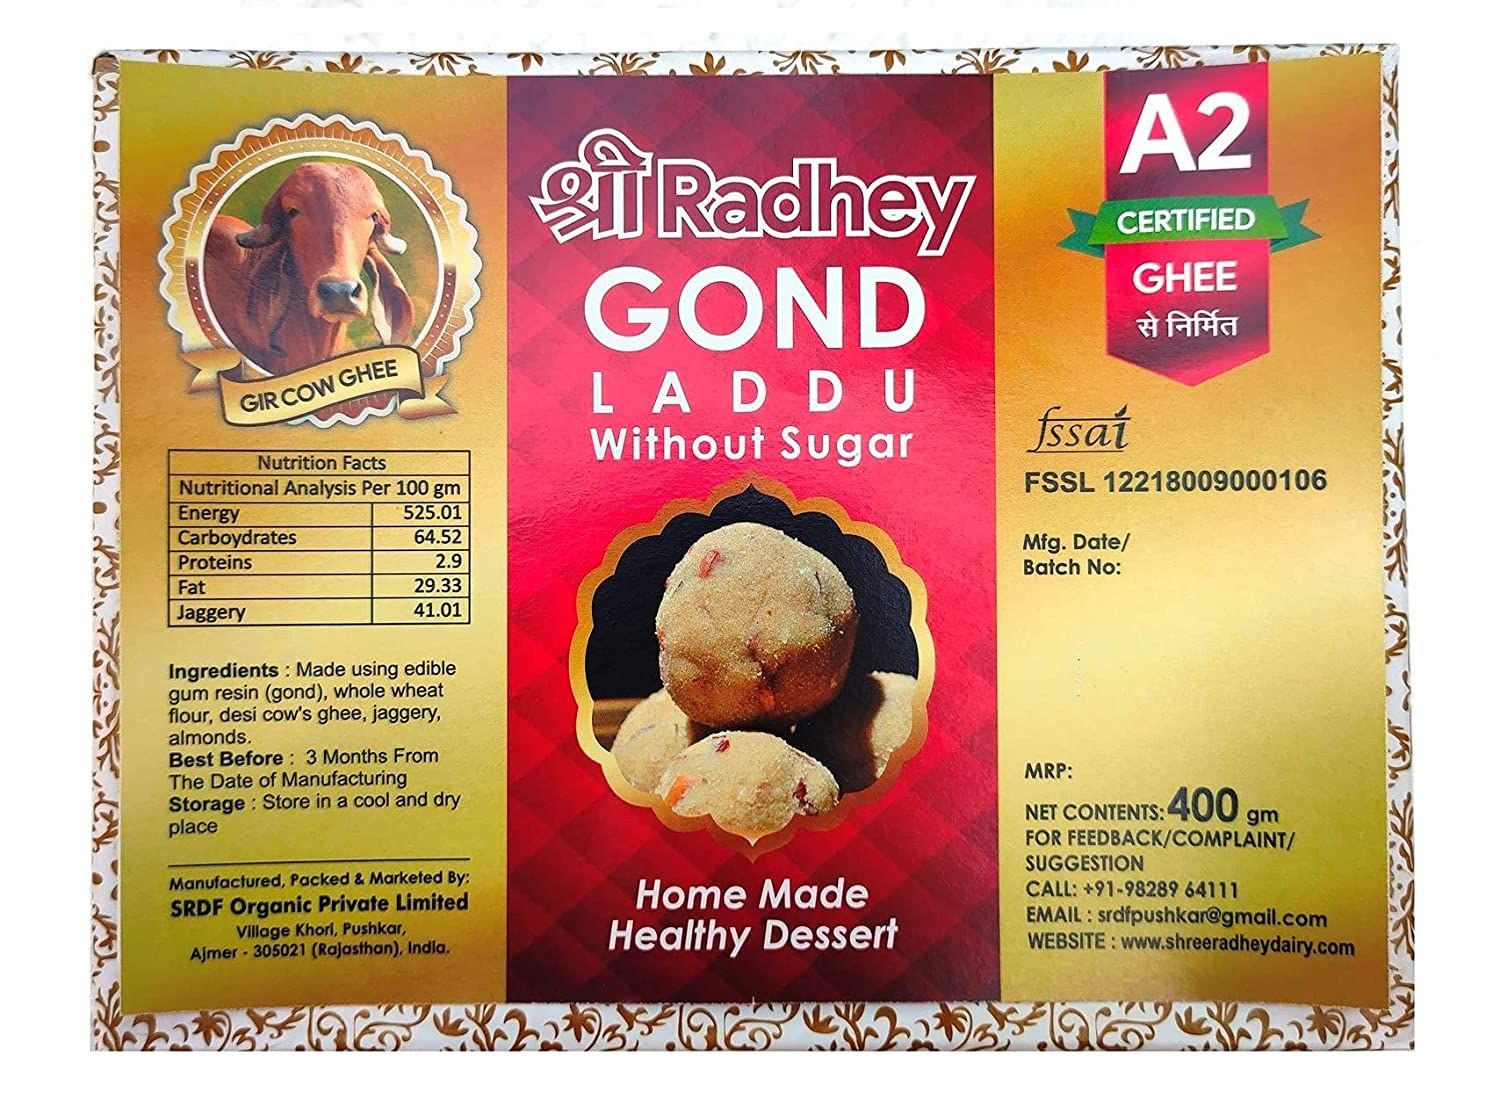 SHREERADHEY Gond Laddu with jaggery Image